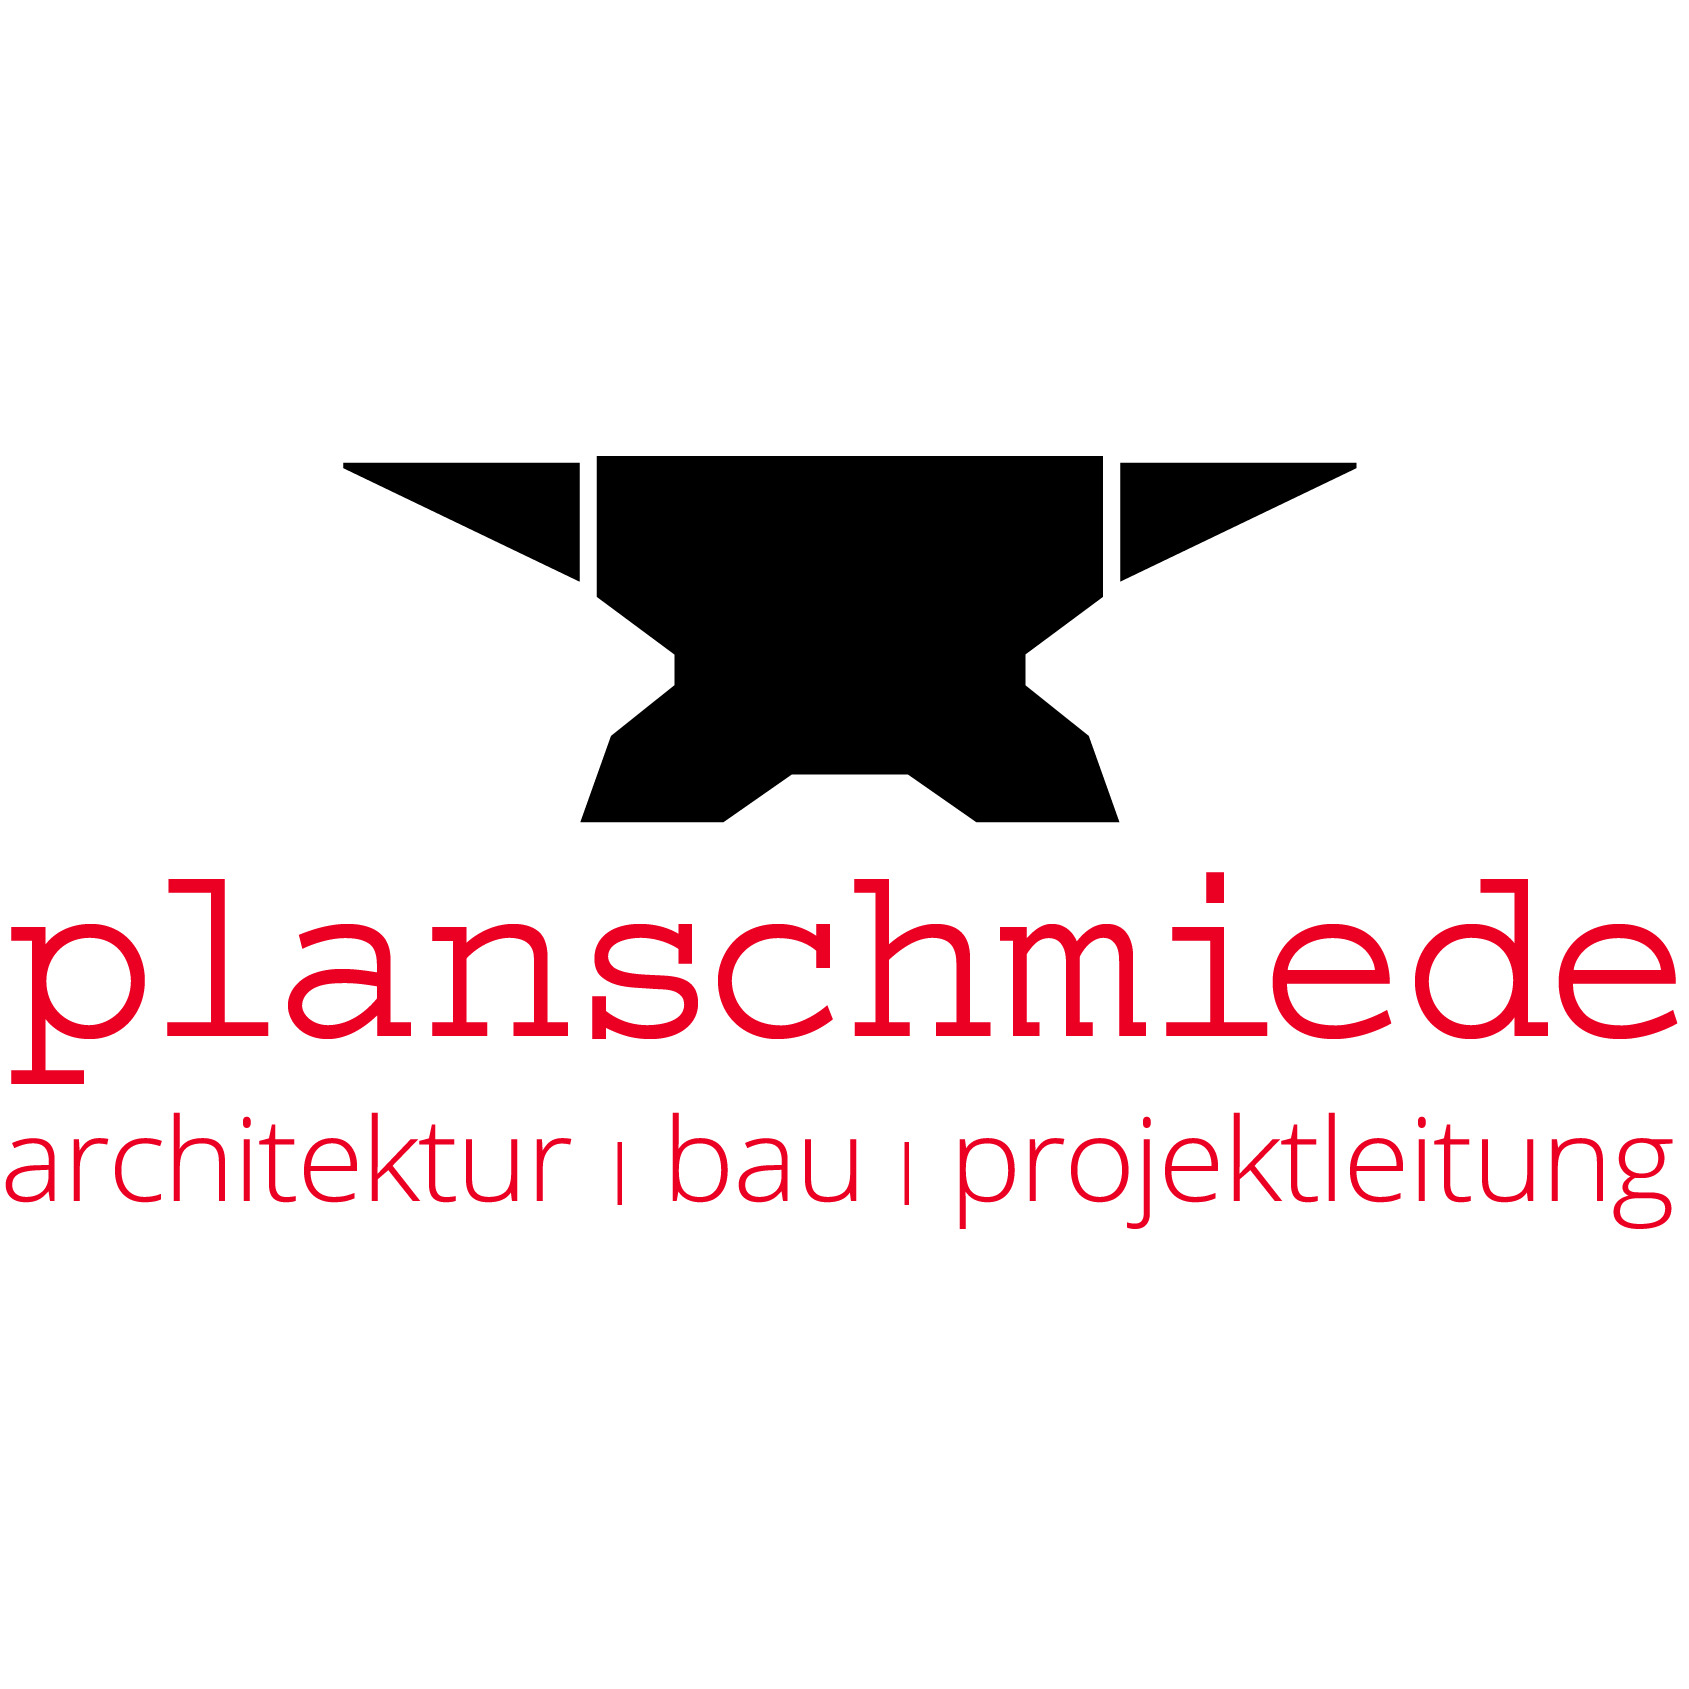 planschmiede GmbH in 6890 Lustenau Logo